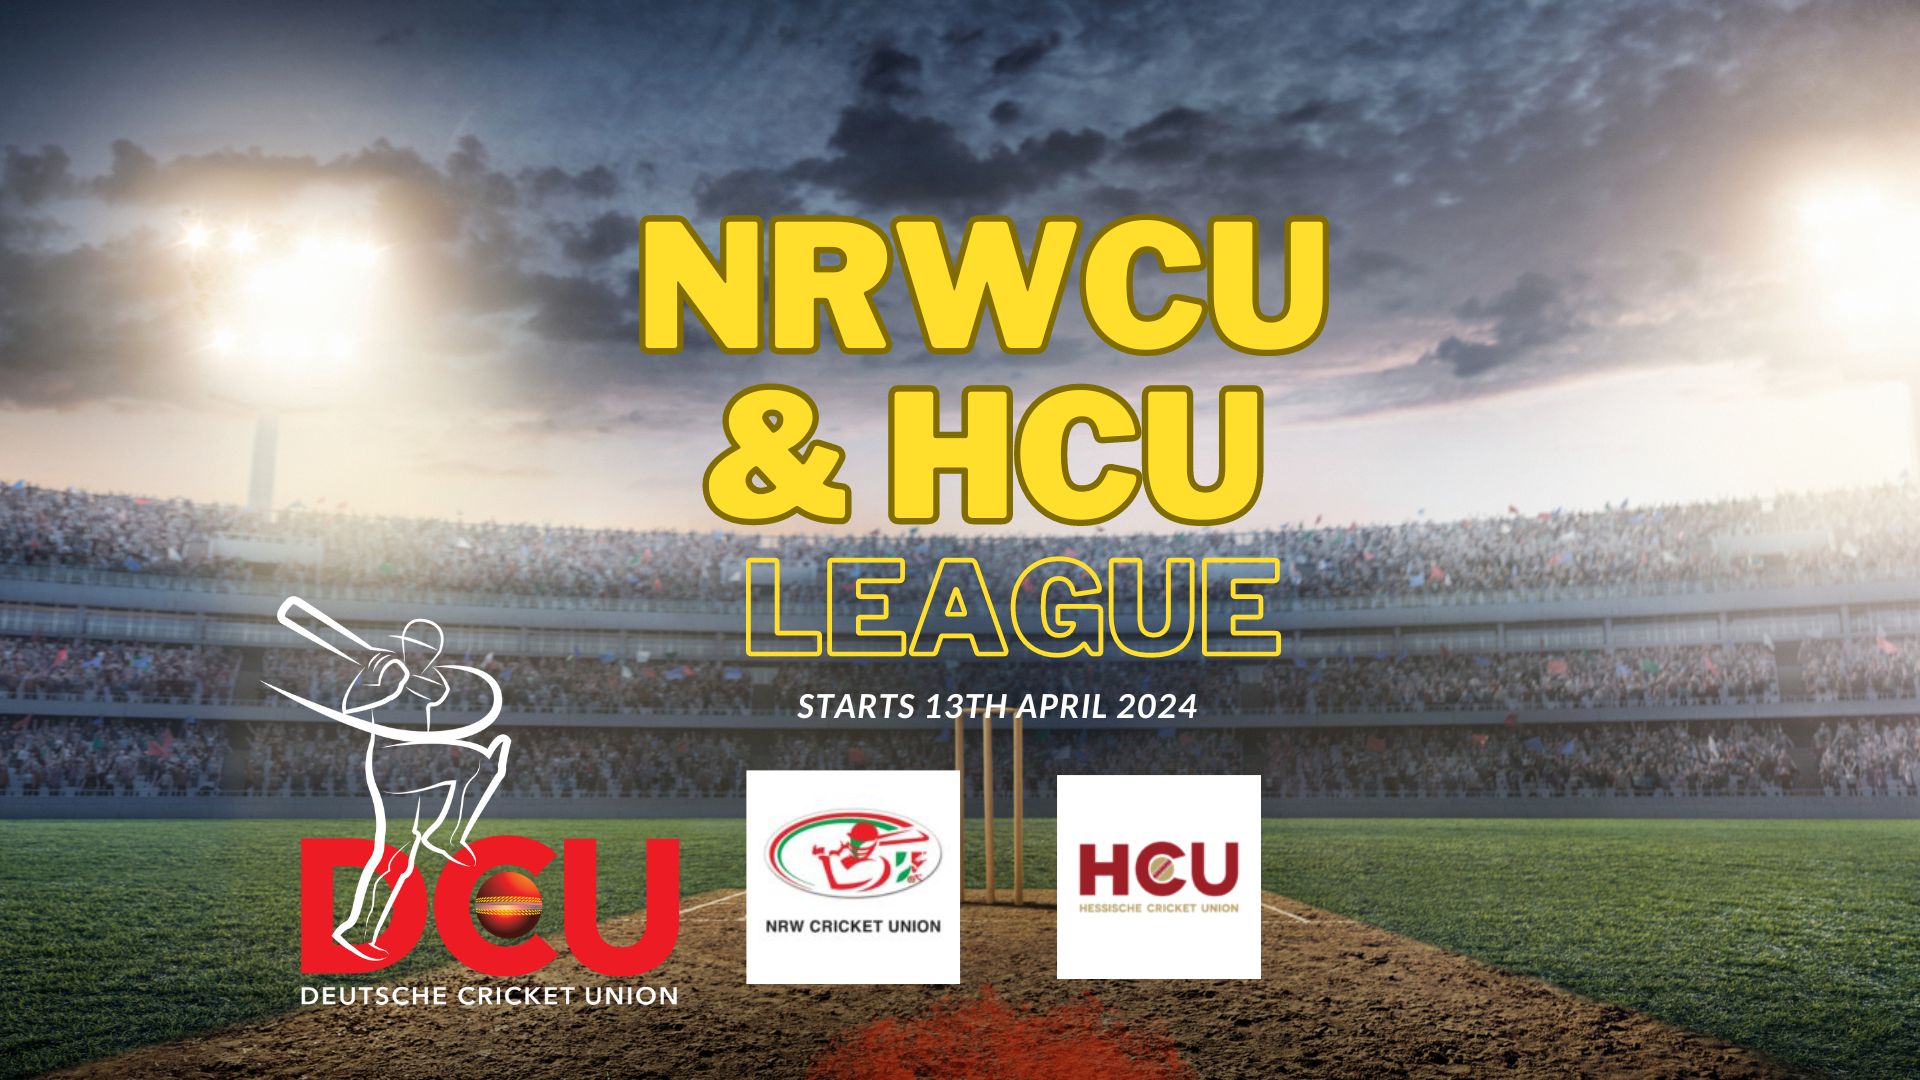 NRWCU & HCU League